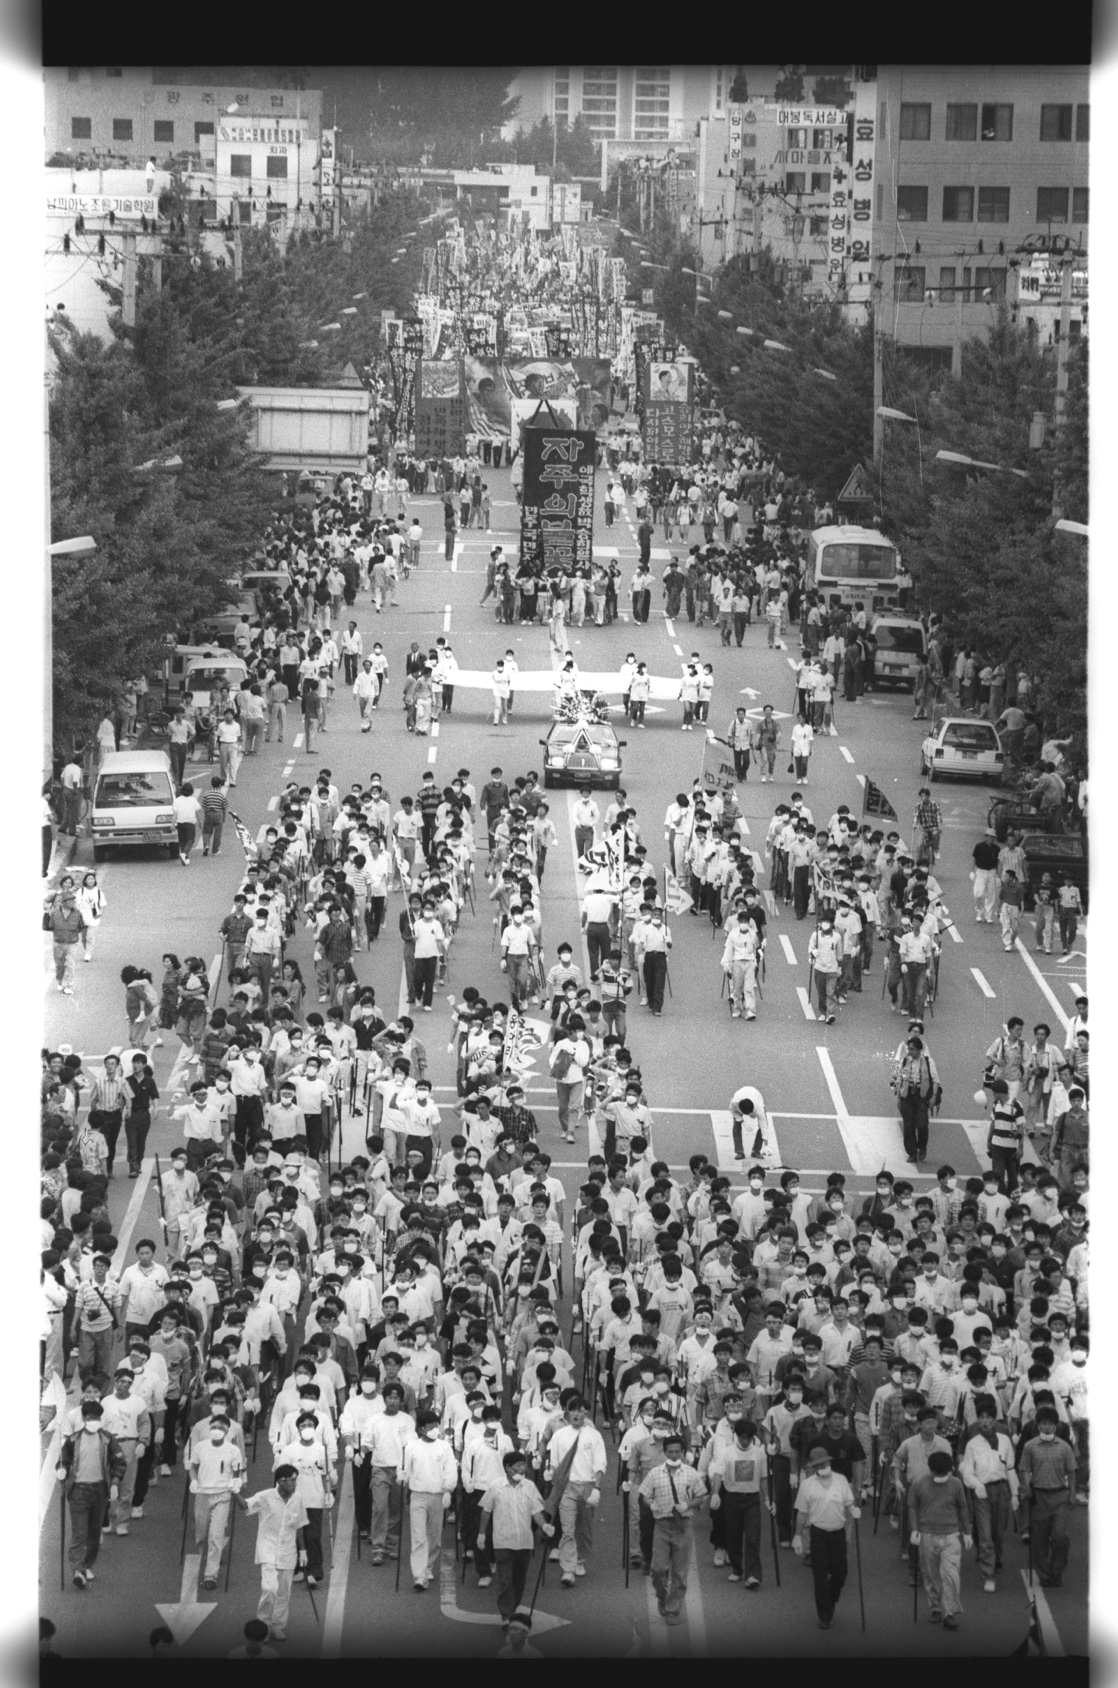  1991년 5월 25일 전남도청 앞에서 열리는 박승희 열사 노제에 참석하기 위해 금남로 거리를 지나는 장례 행렬